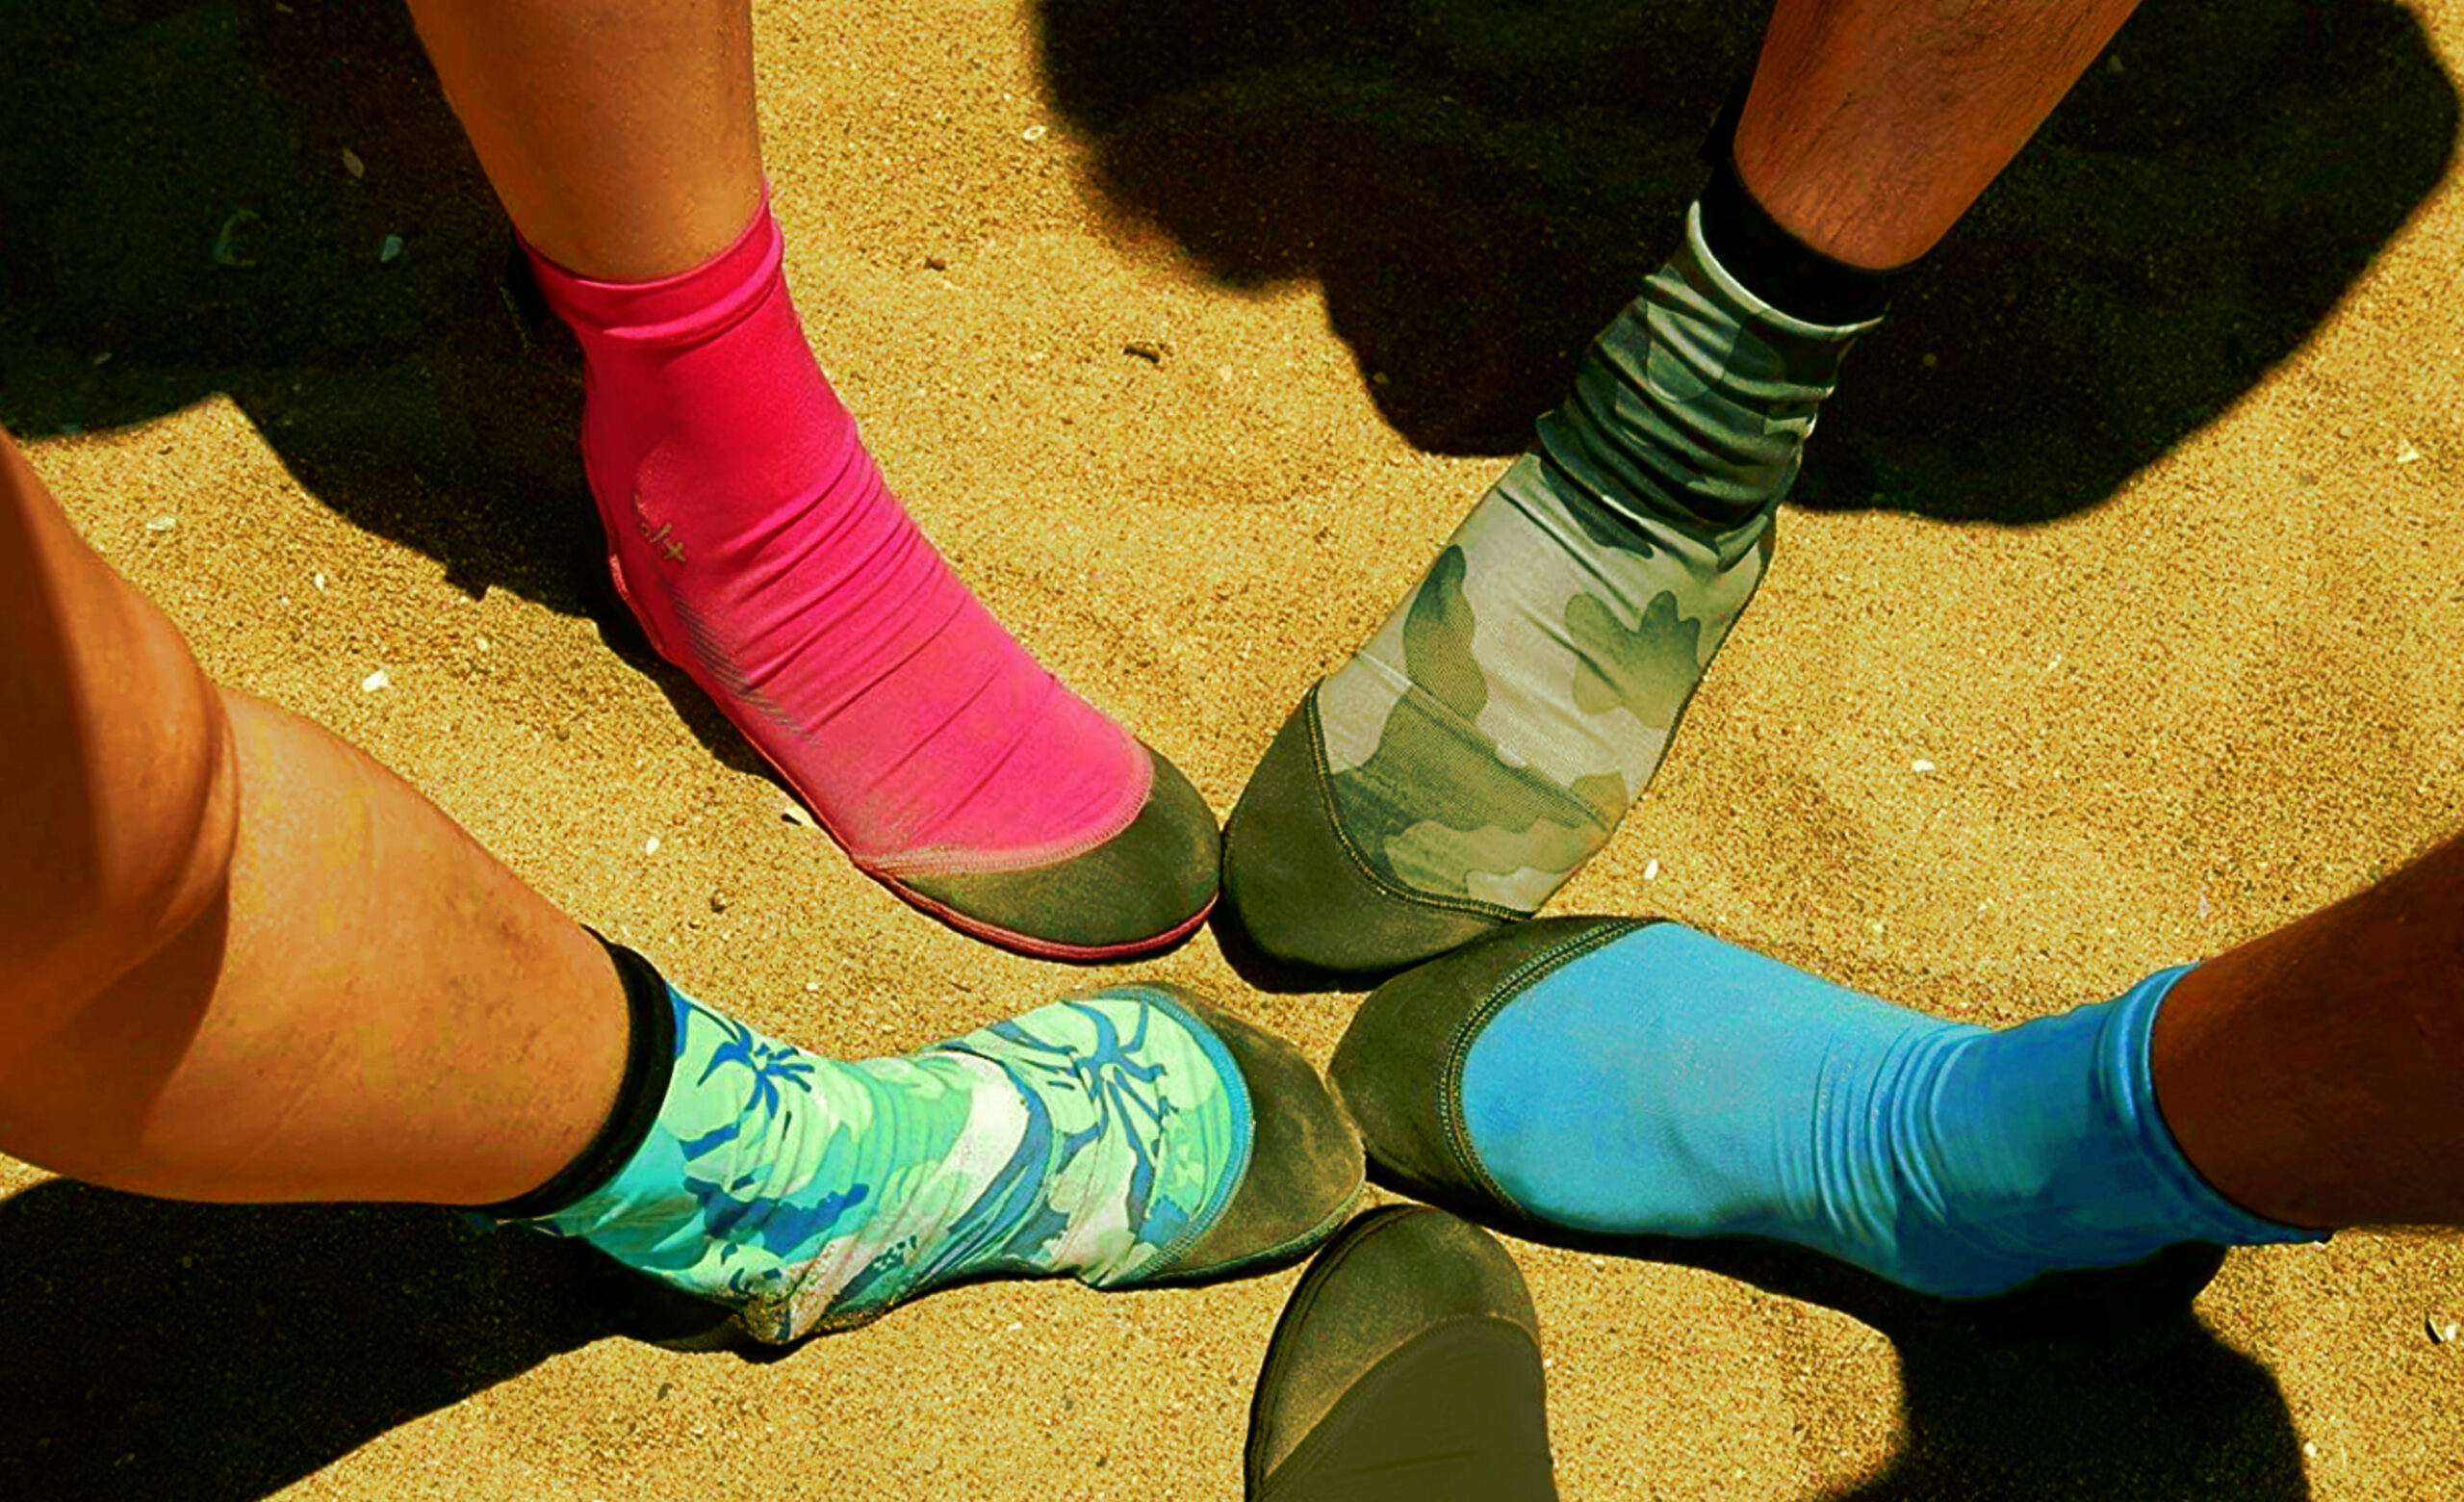 Sand sokker - til beachvolley, Fodbold, Surfing osv.